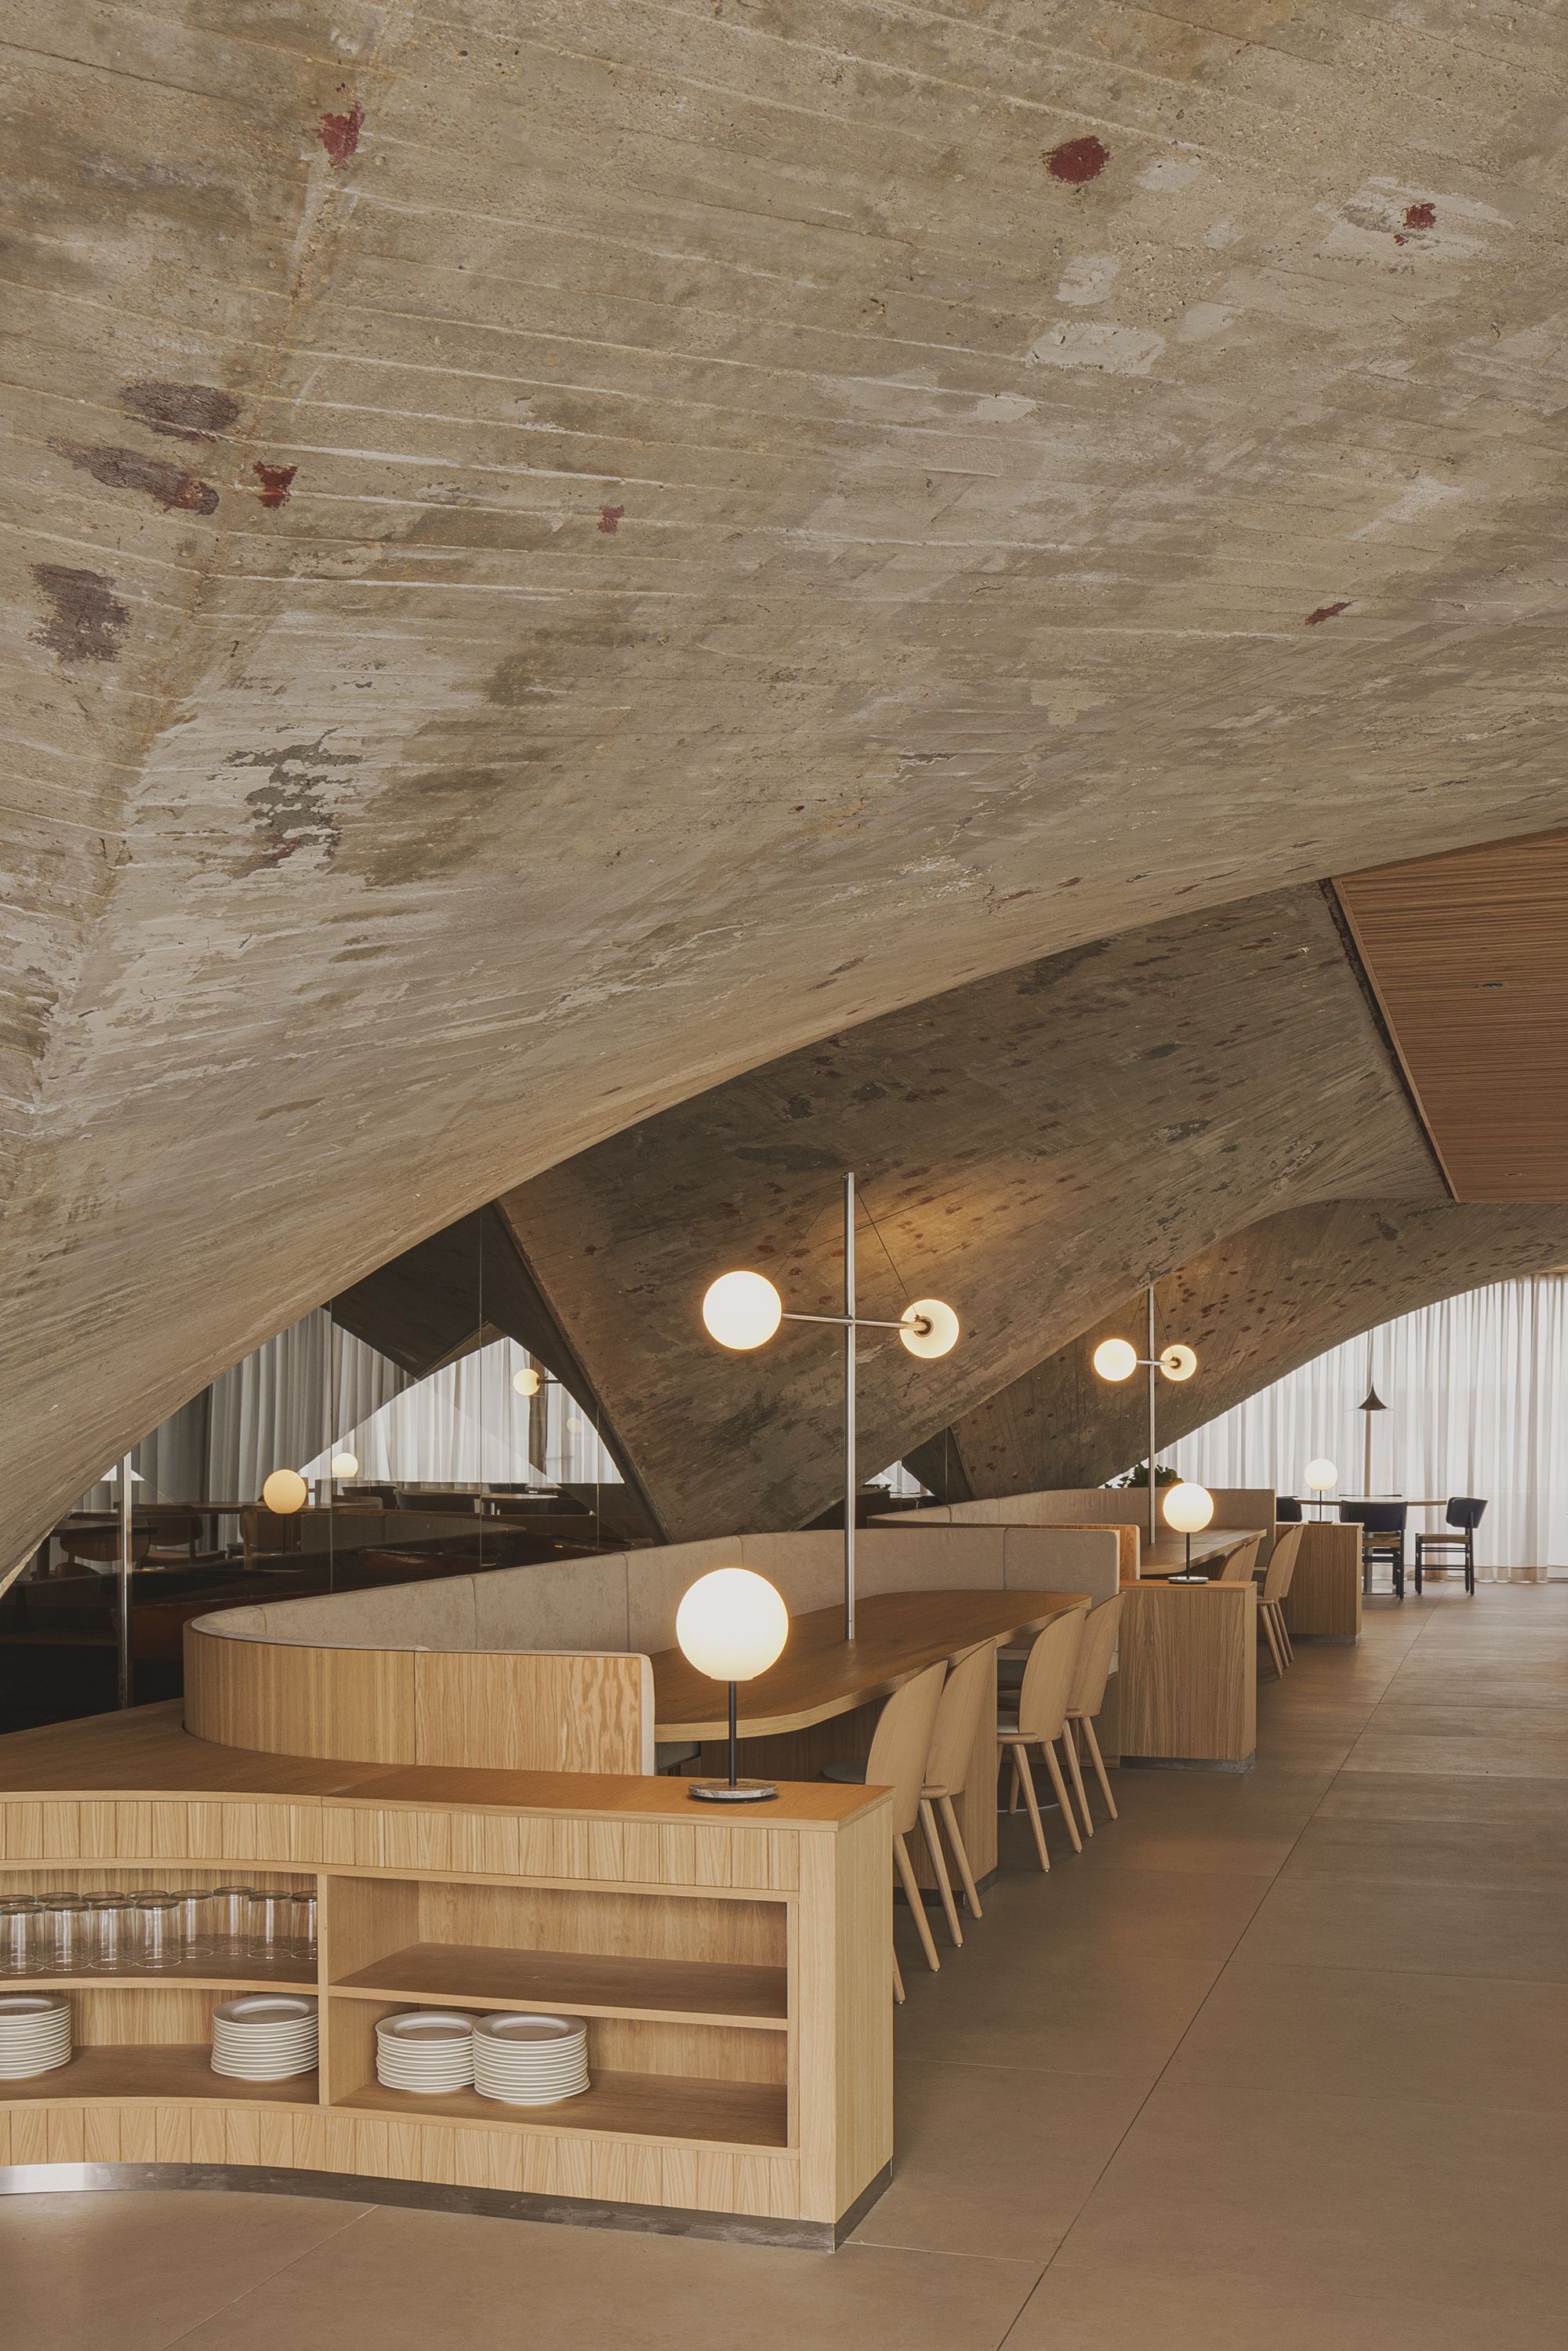 图片[4]|坎塔布里安海事博物馆餐厅|ART-Arrakis | 建筑室内设计的创新与灵感